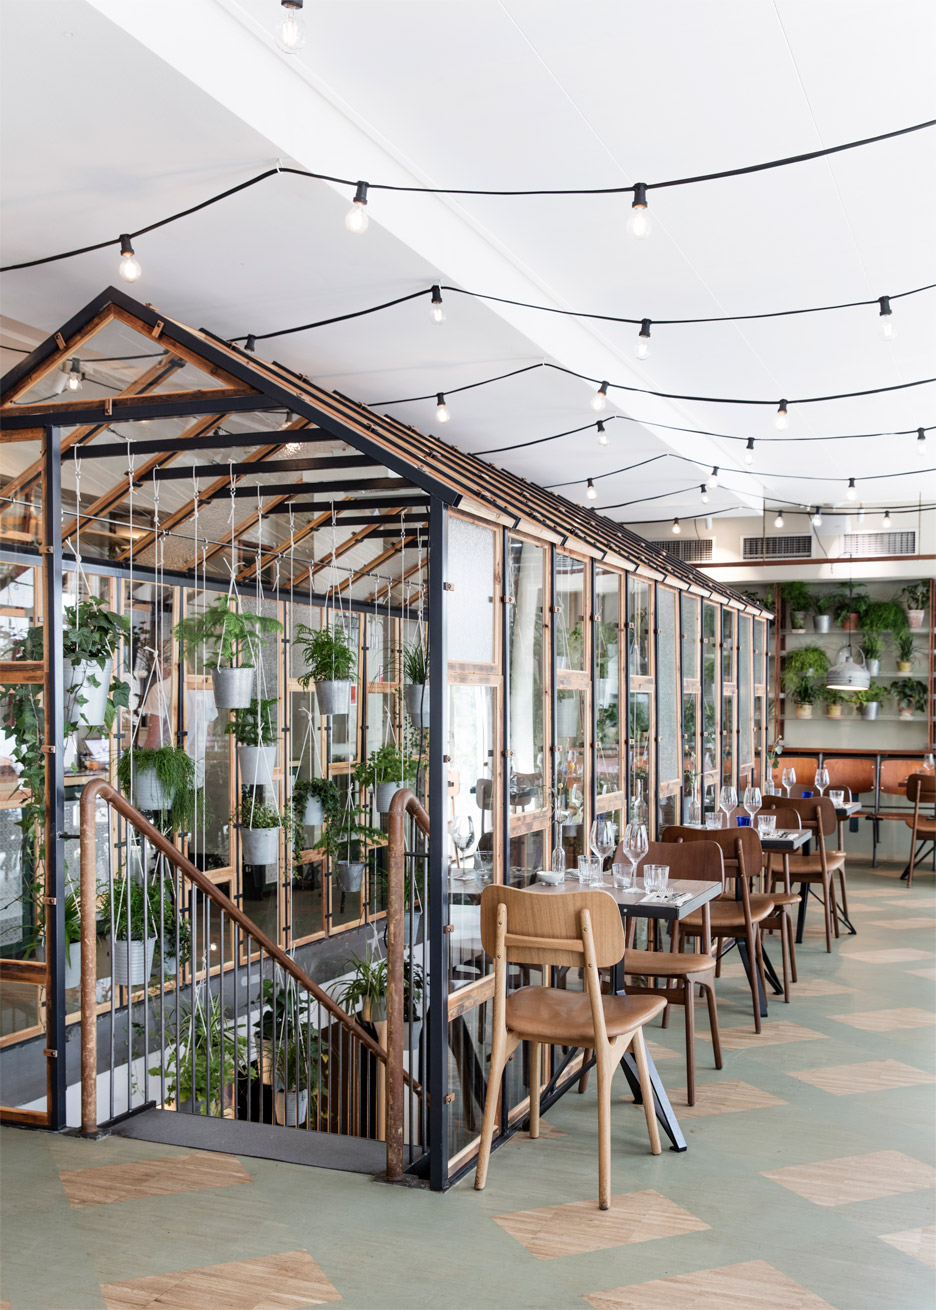 Danish Design Studio Creates an Indoor Garden For a Restaurant